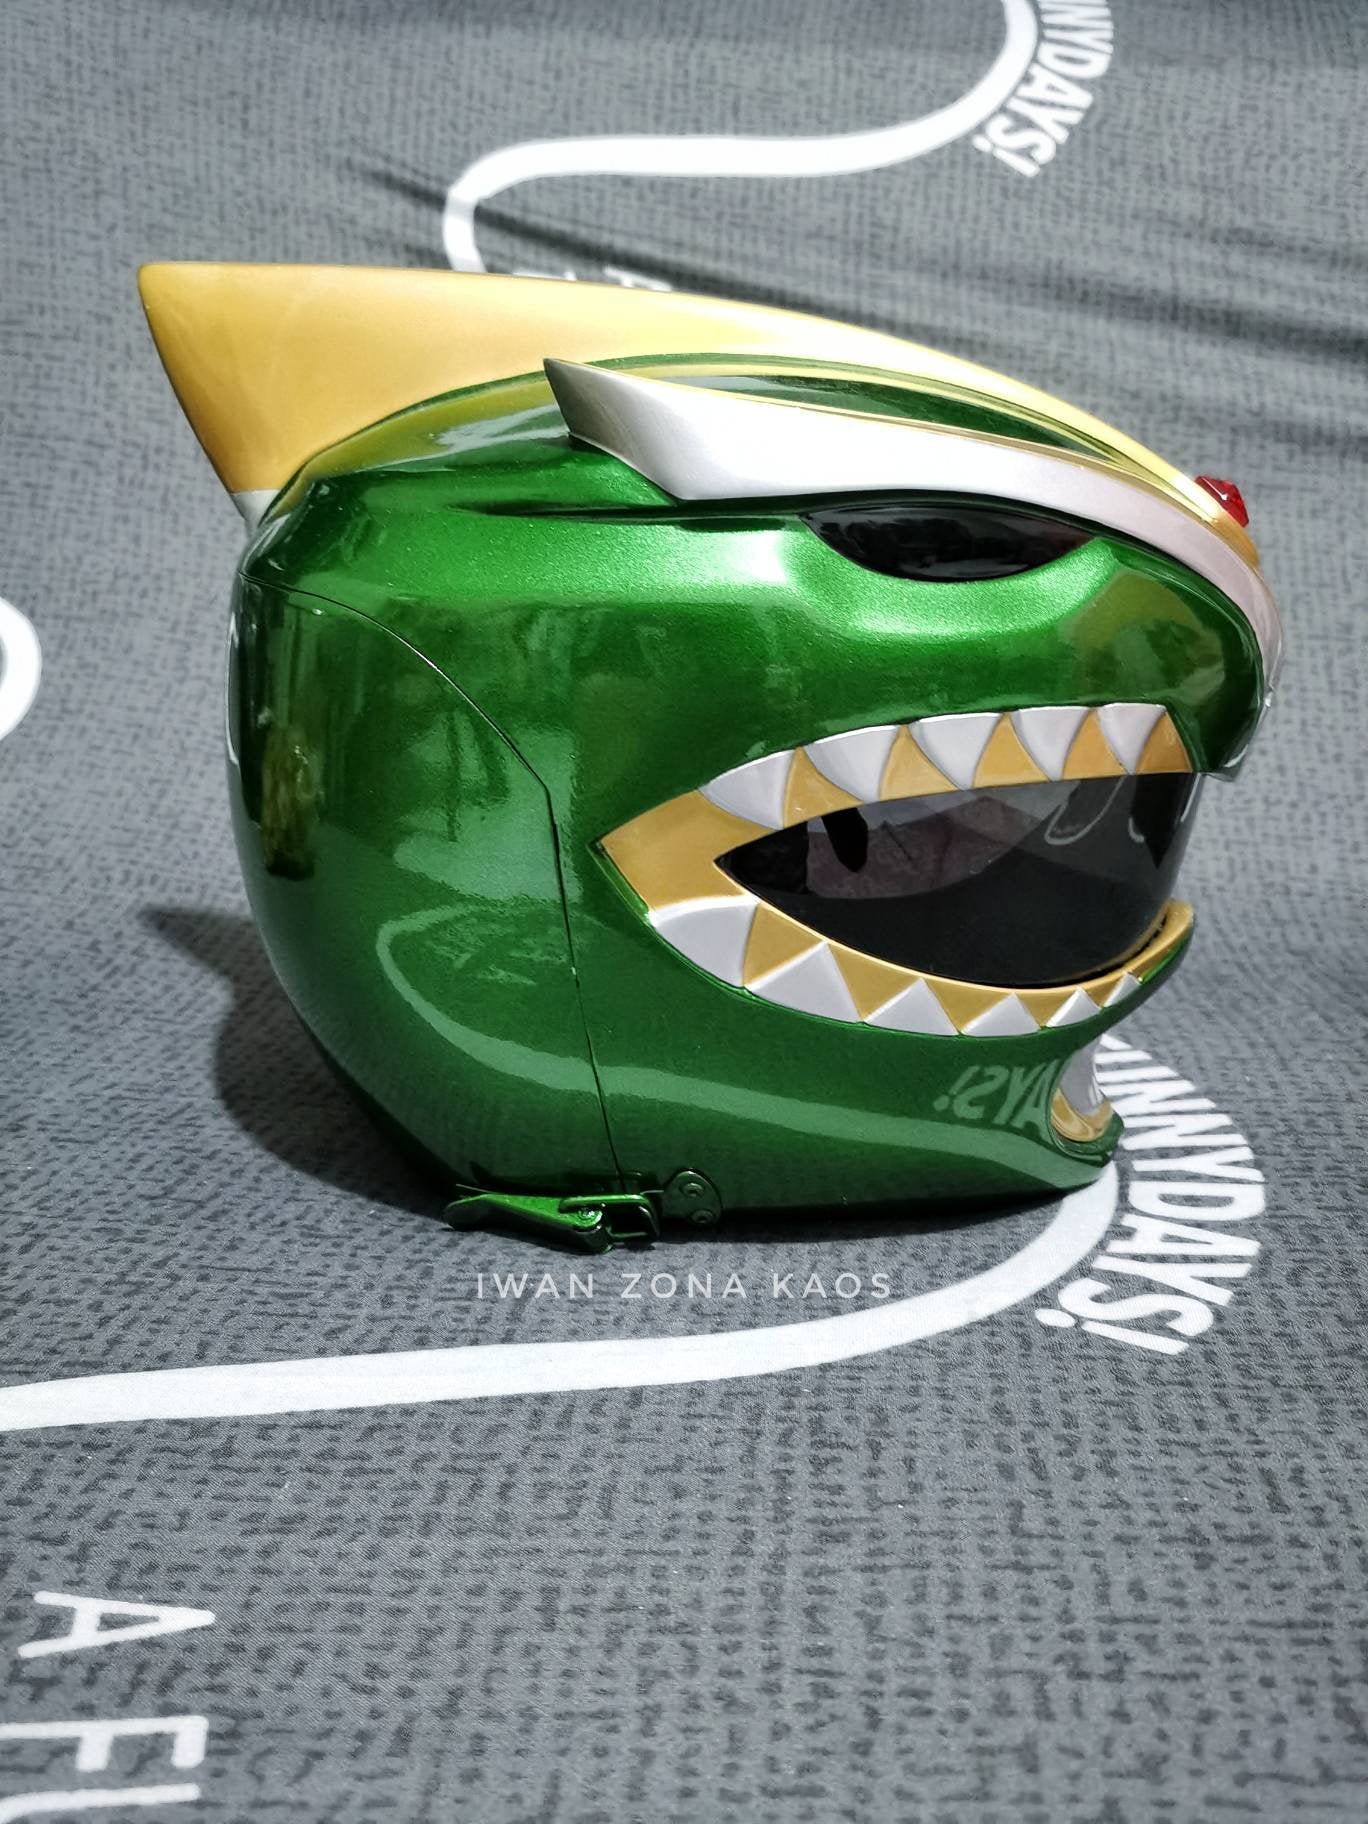 Green ranger bat in the sun helmet